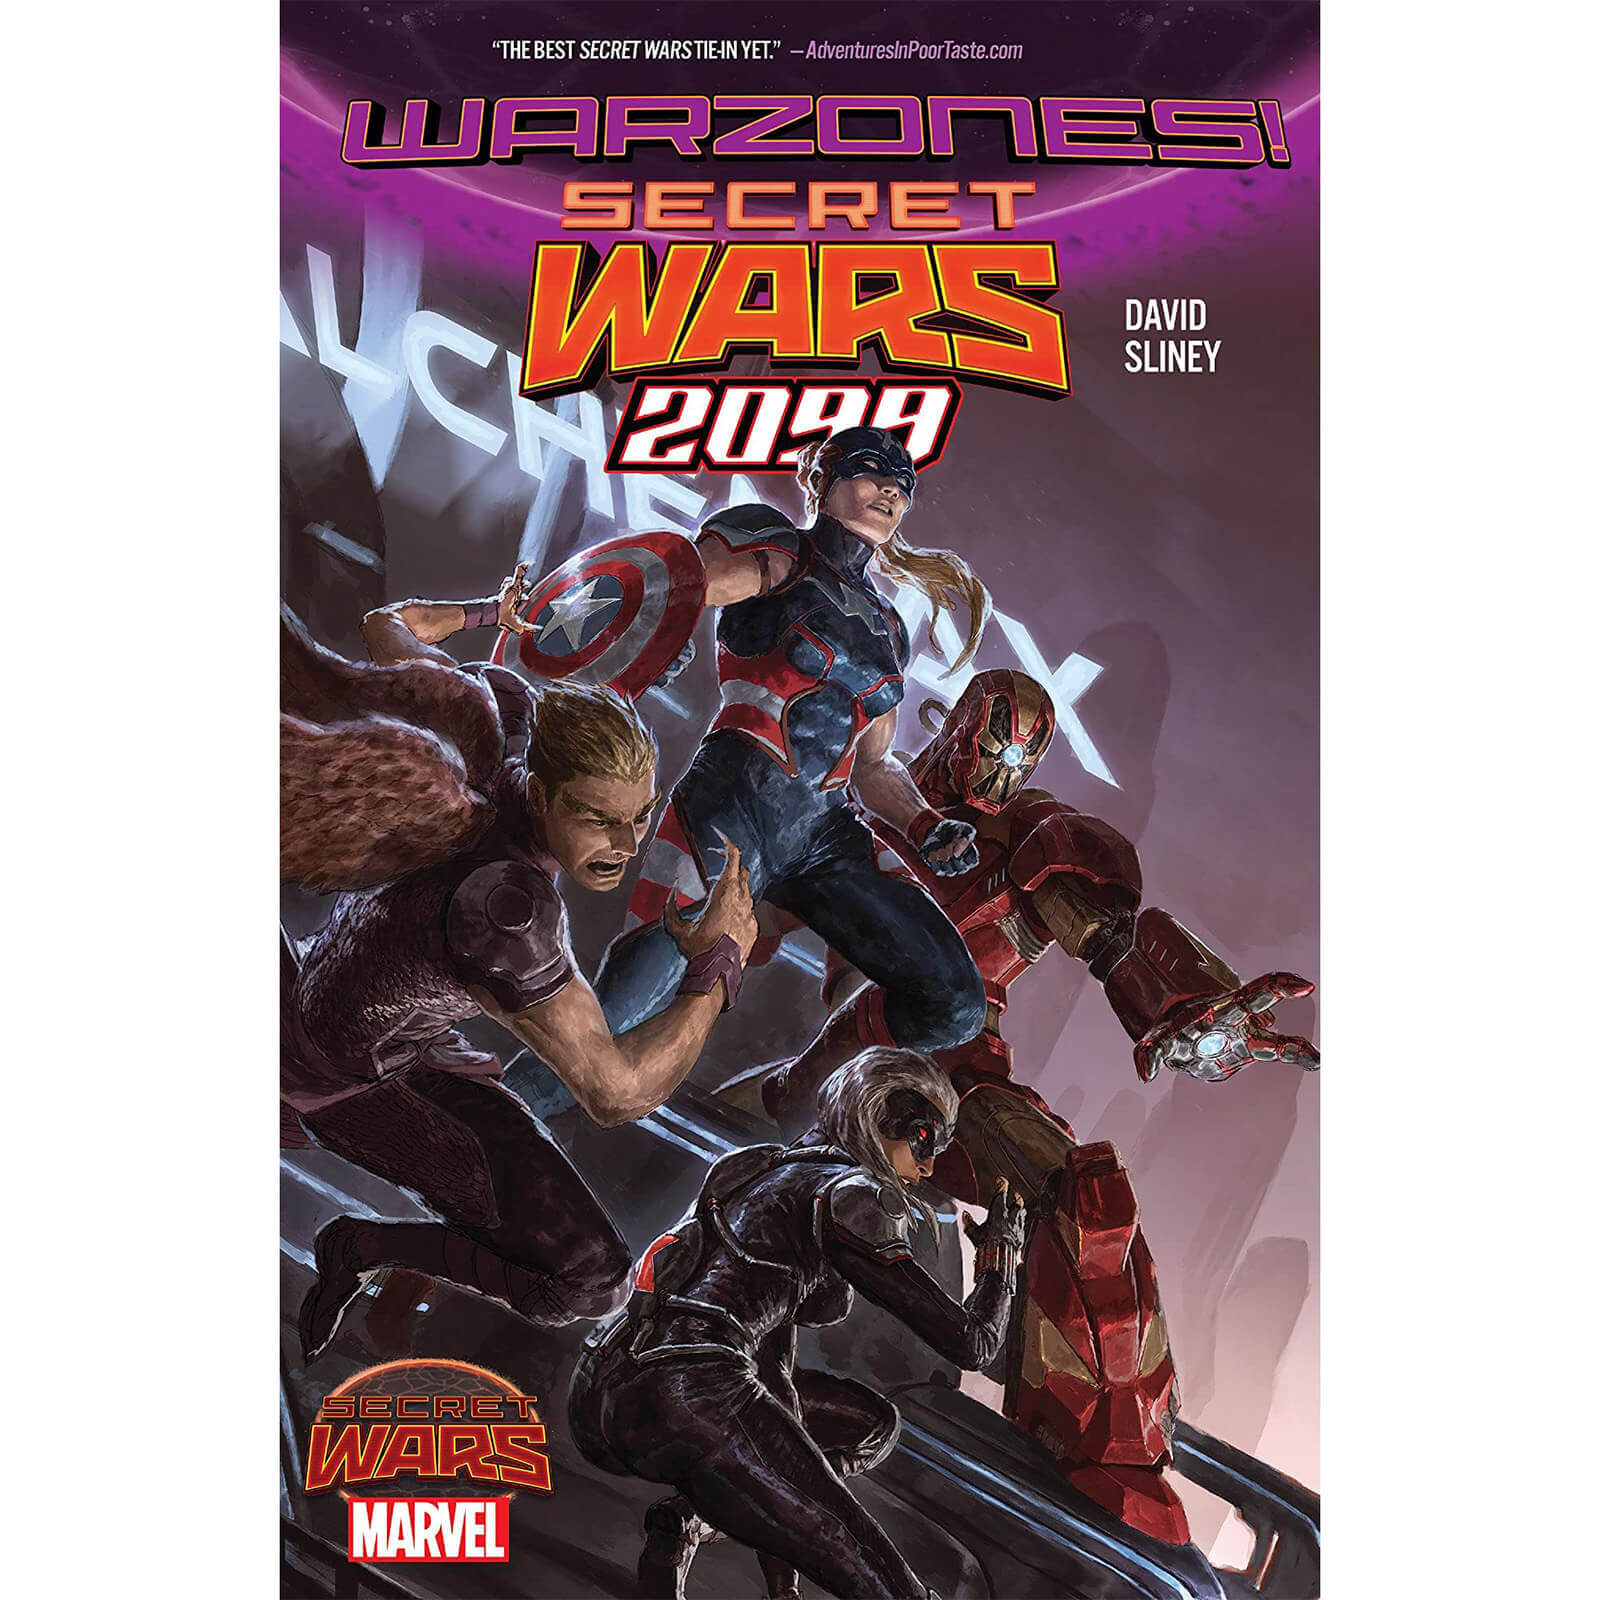 Marvel Secret Wars 2099 Graphic Novel Paperback